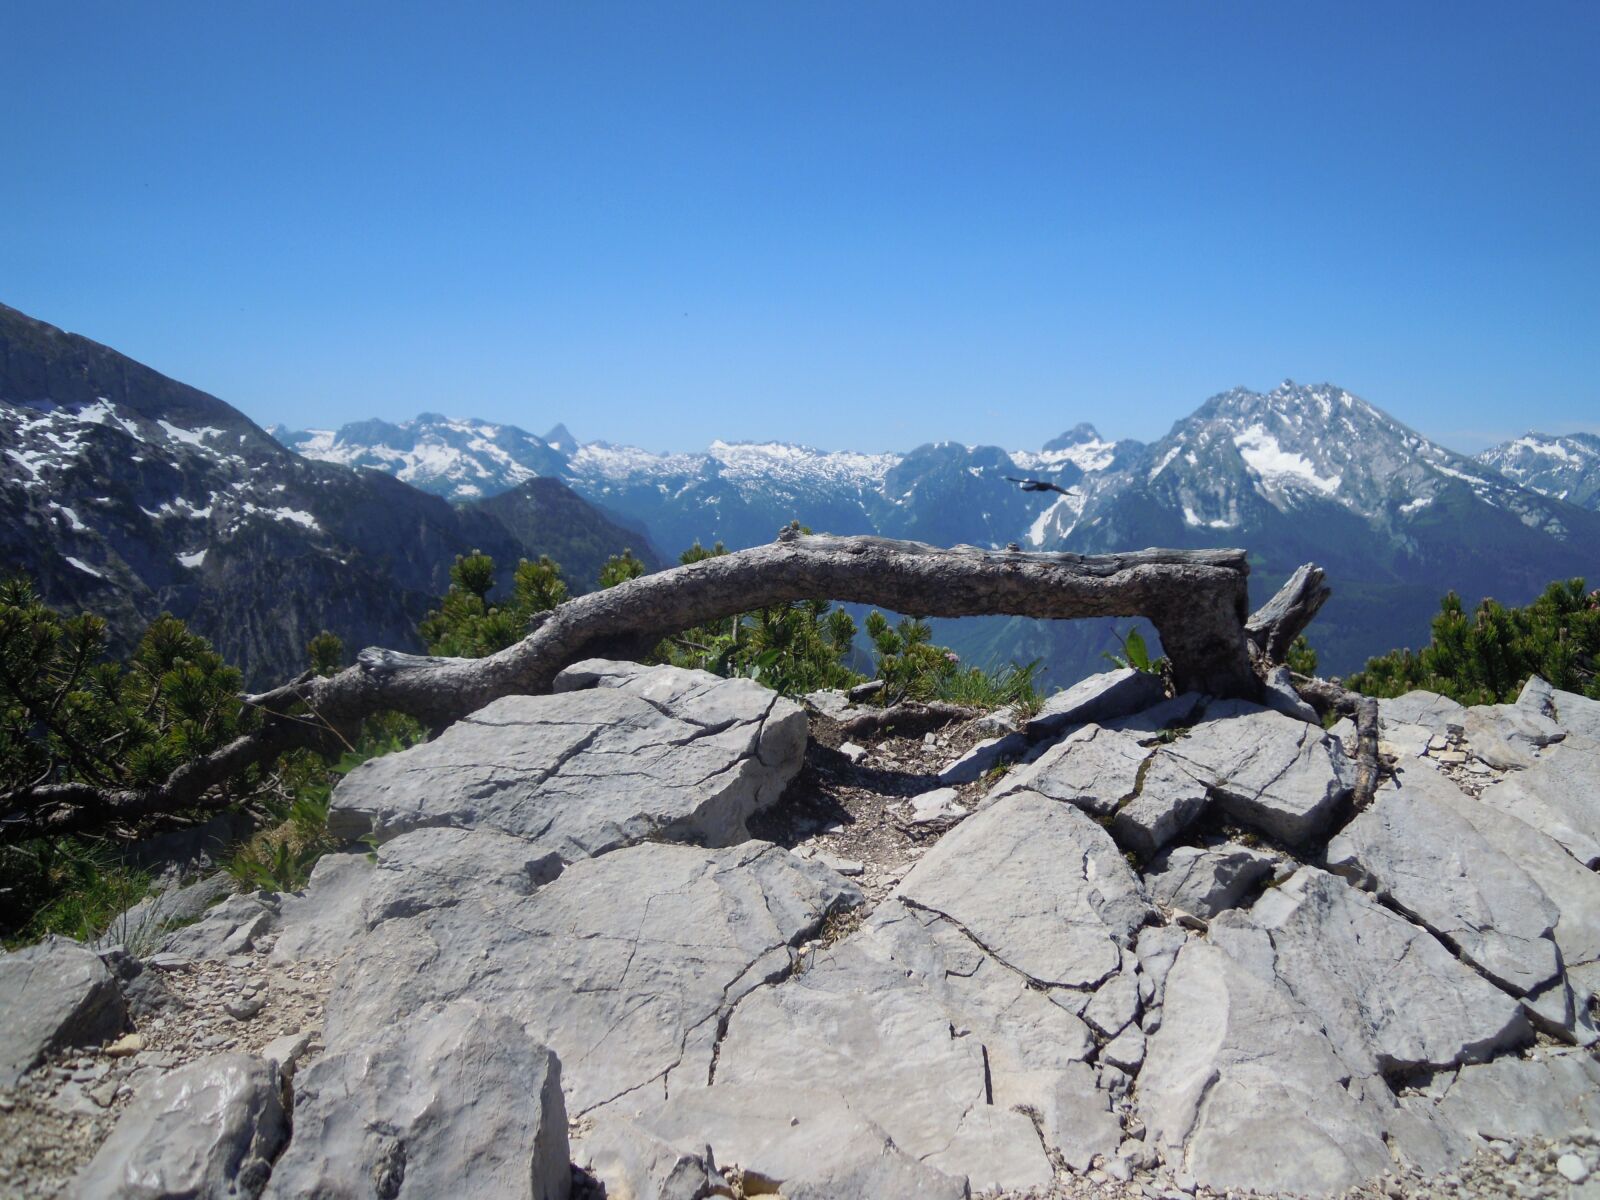 Nikon Coolpix S5100 sample photo. Alpine, stone, mountains photography